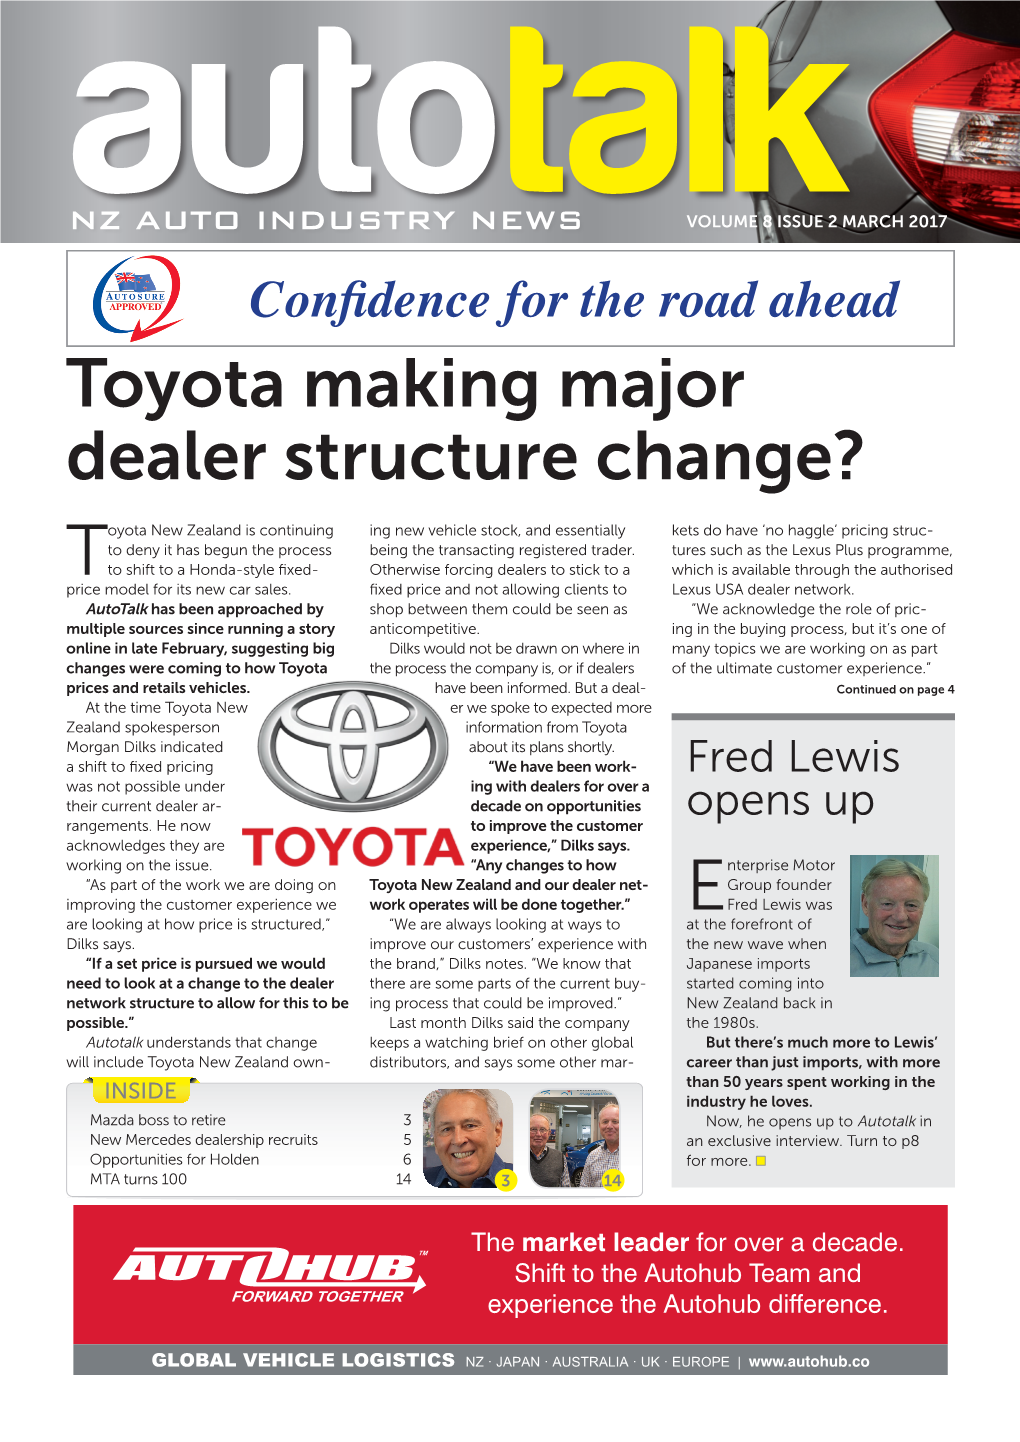 Toyota Making Major Dealer Structure Change?